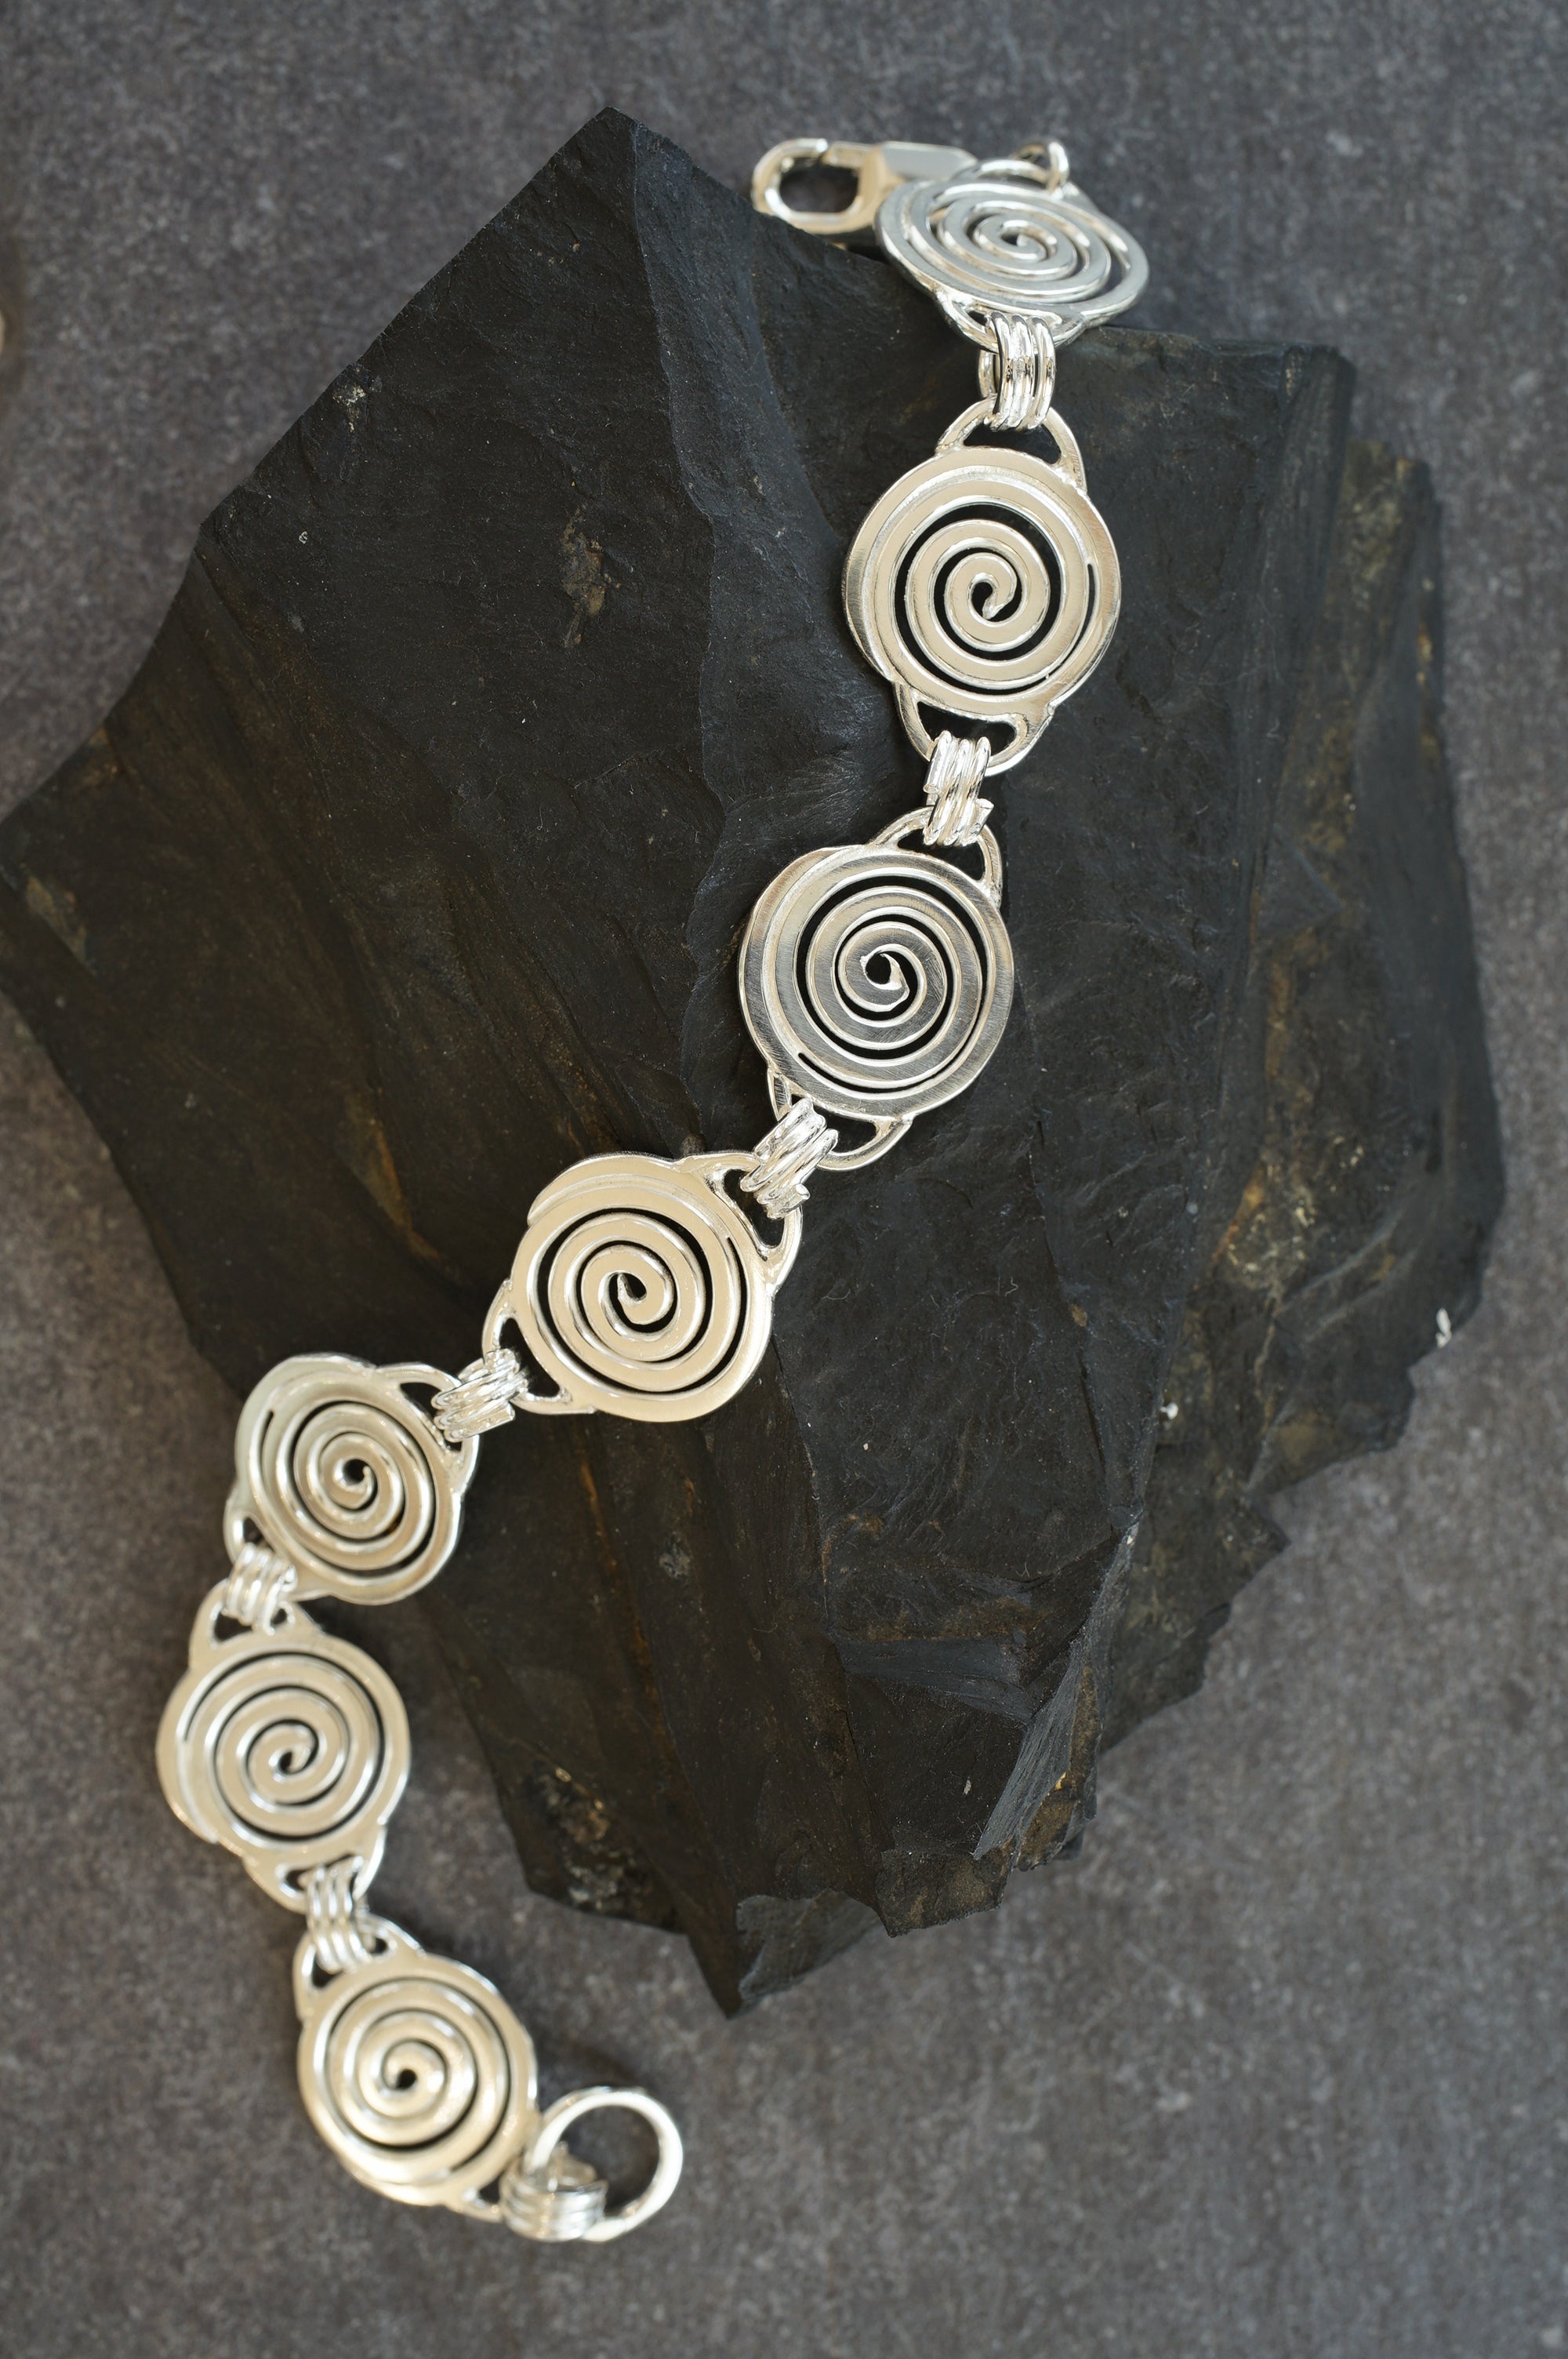 Sterling silver spiral bracelet from Angela Kelly Jewellery Enniskillen Fermanagh